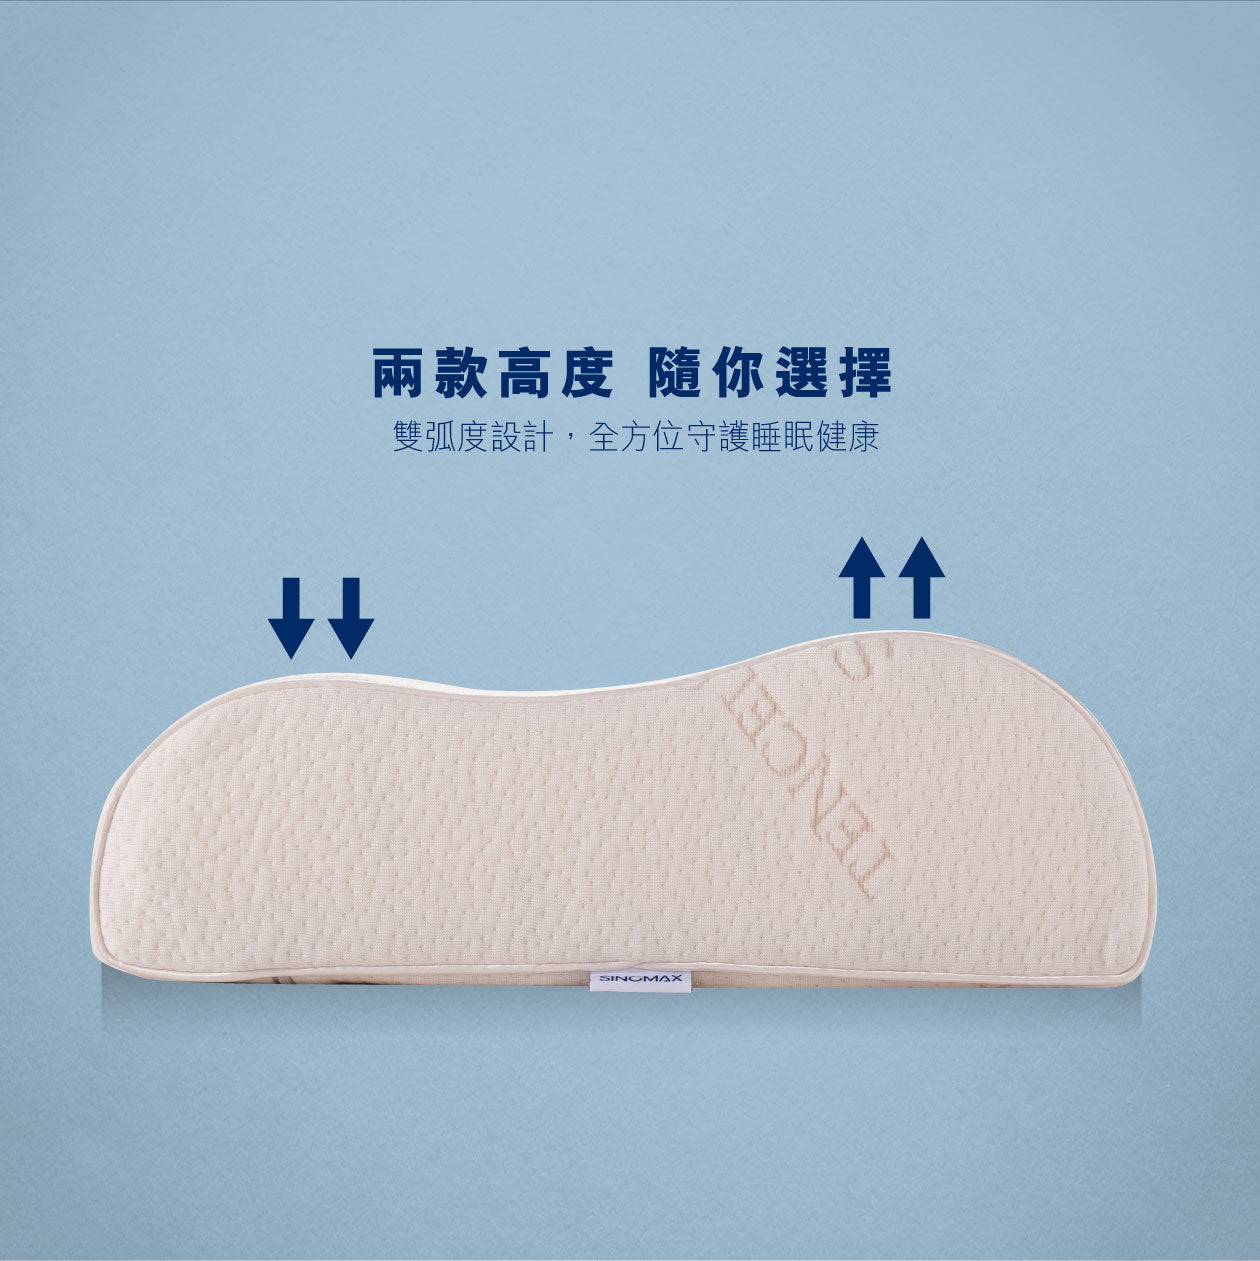 天絲弧形枕- SINOMAX | Innovation For Sleep